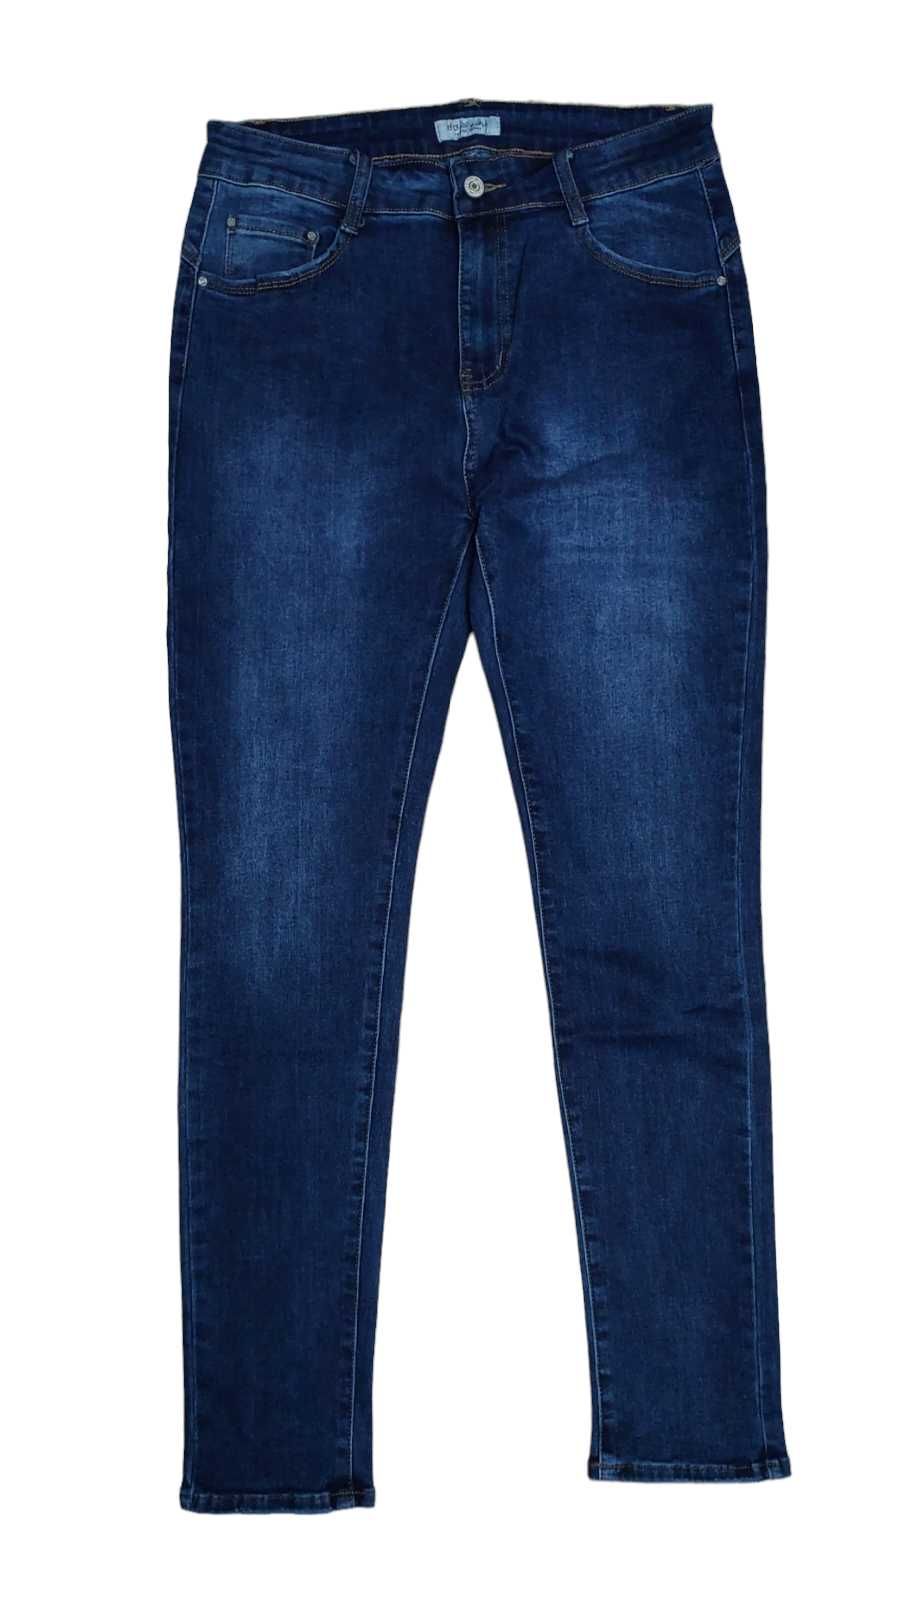 Spodnie jeansowe damskie, R. 42